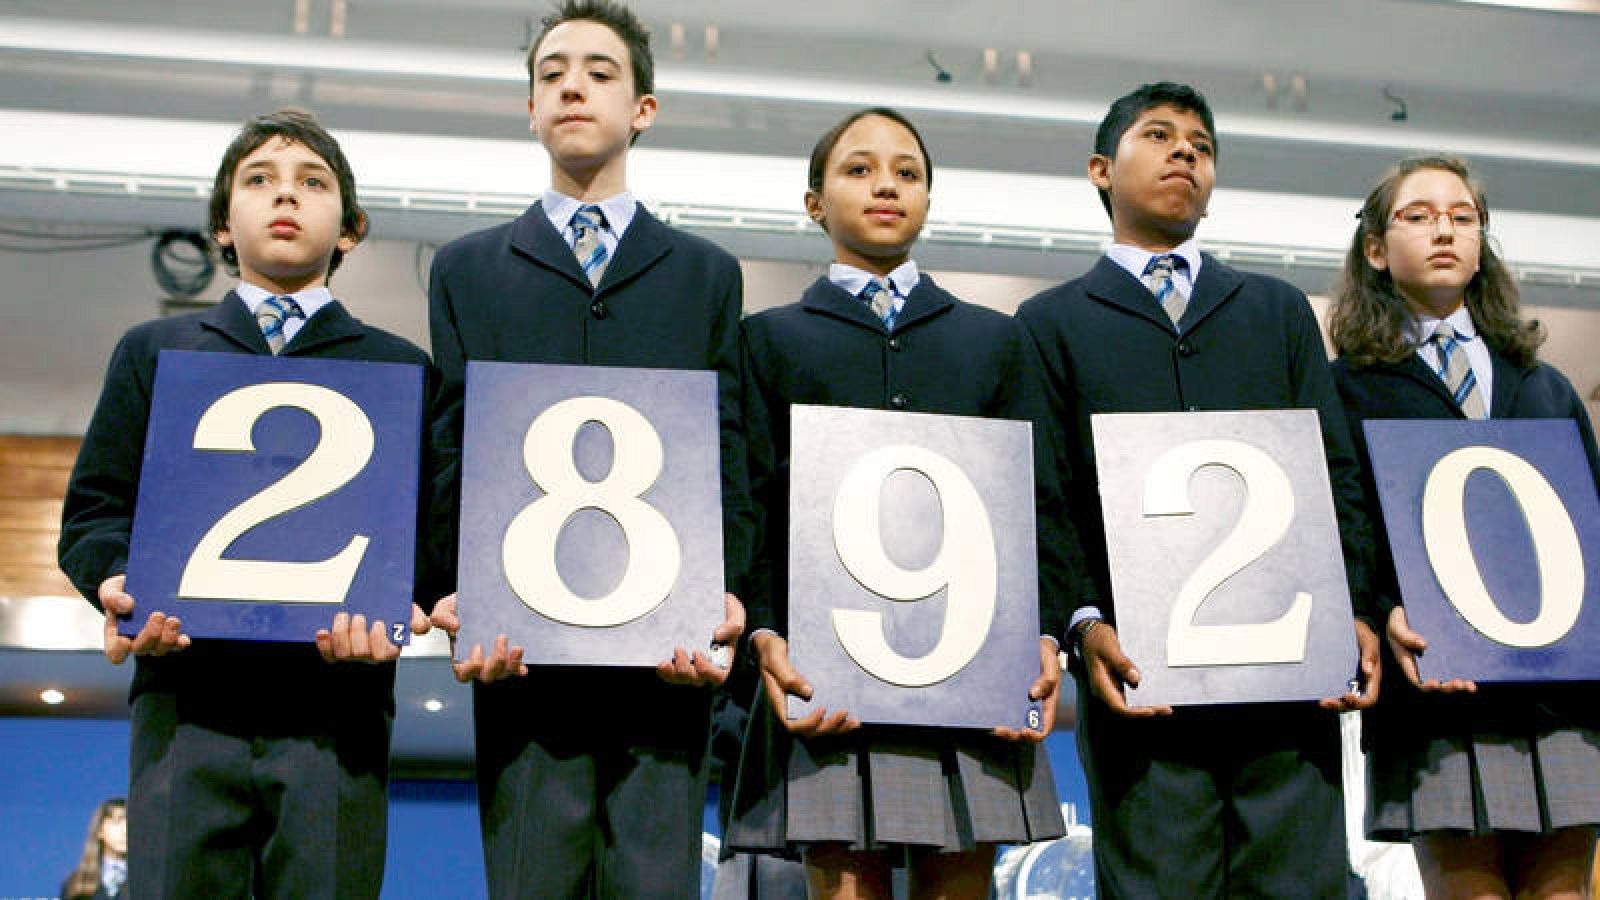  Los niños de San Ildefonso muestran el primer premio del Sorteo Extraordinario de lotería de "El Niño" en 2009